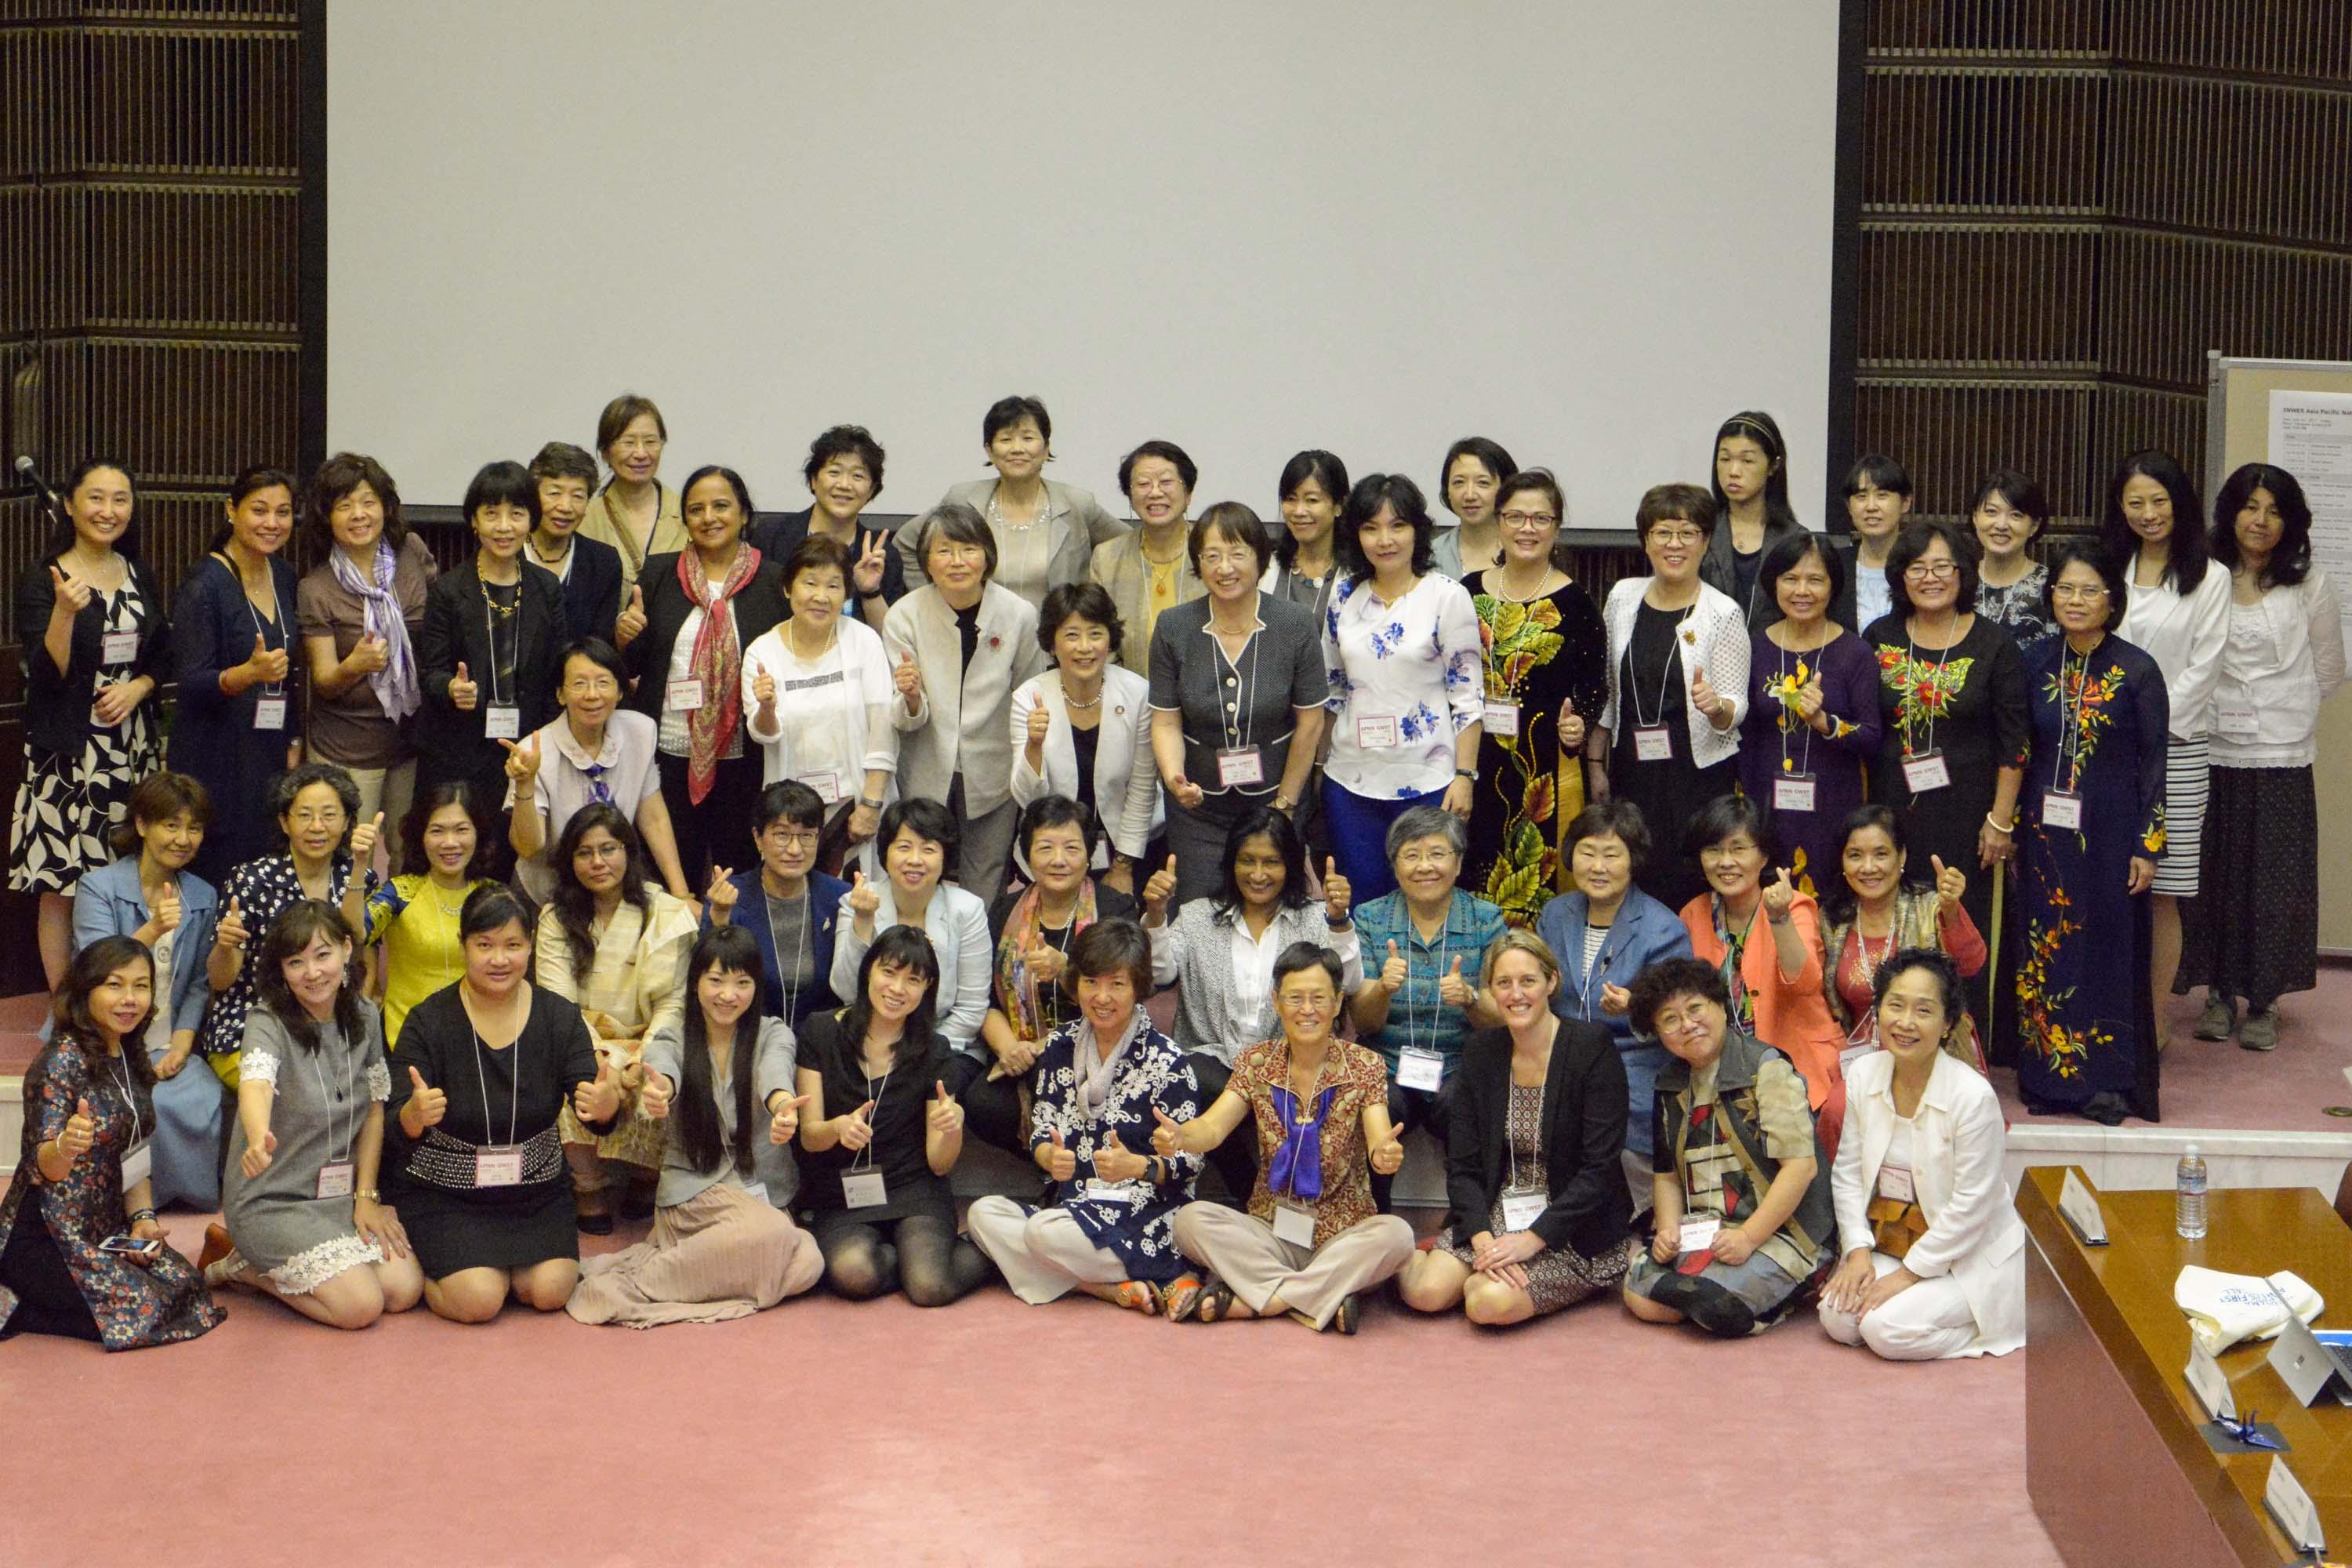 Hội nghị Quốc tế nữ KH&CN toàn cầu và Mạng lưới các nhà khoa học nữ Châu Á – Thái Bình Dương - ảnh 2